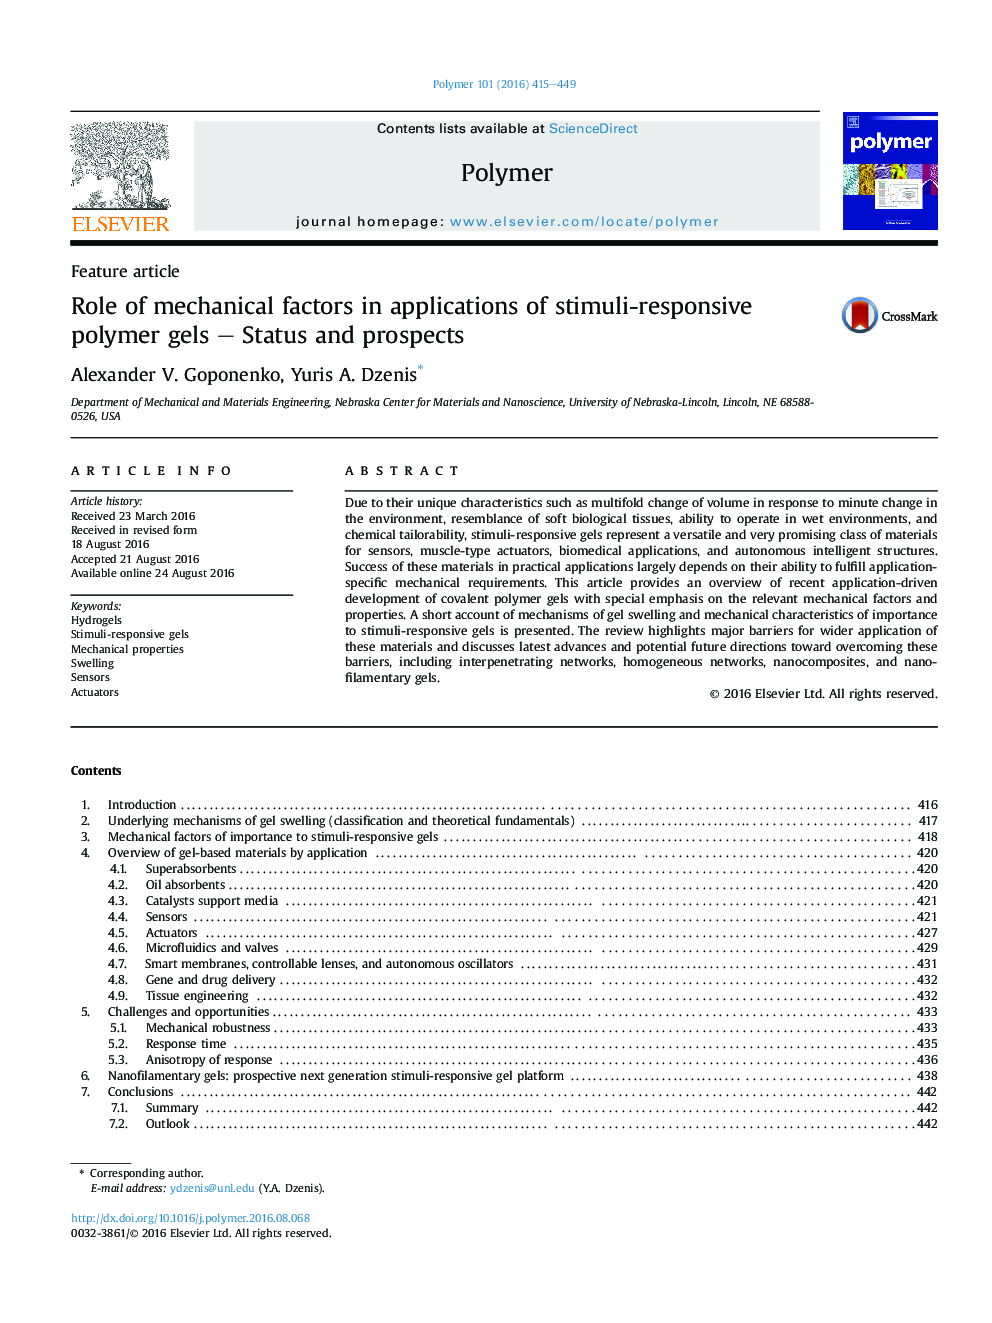 نقش عوامل مکانیکی در استفاده از ژل های پلیمر پاسخگو محرک - وضعیت و چشم انداز 